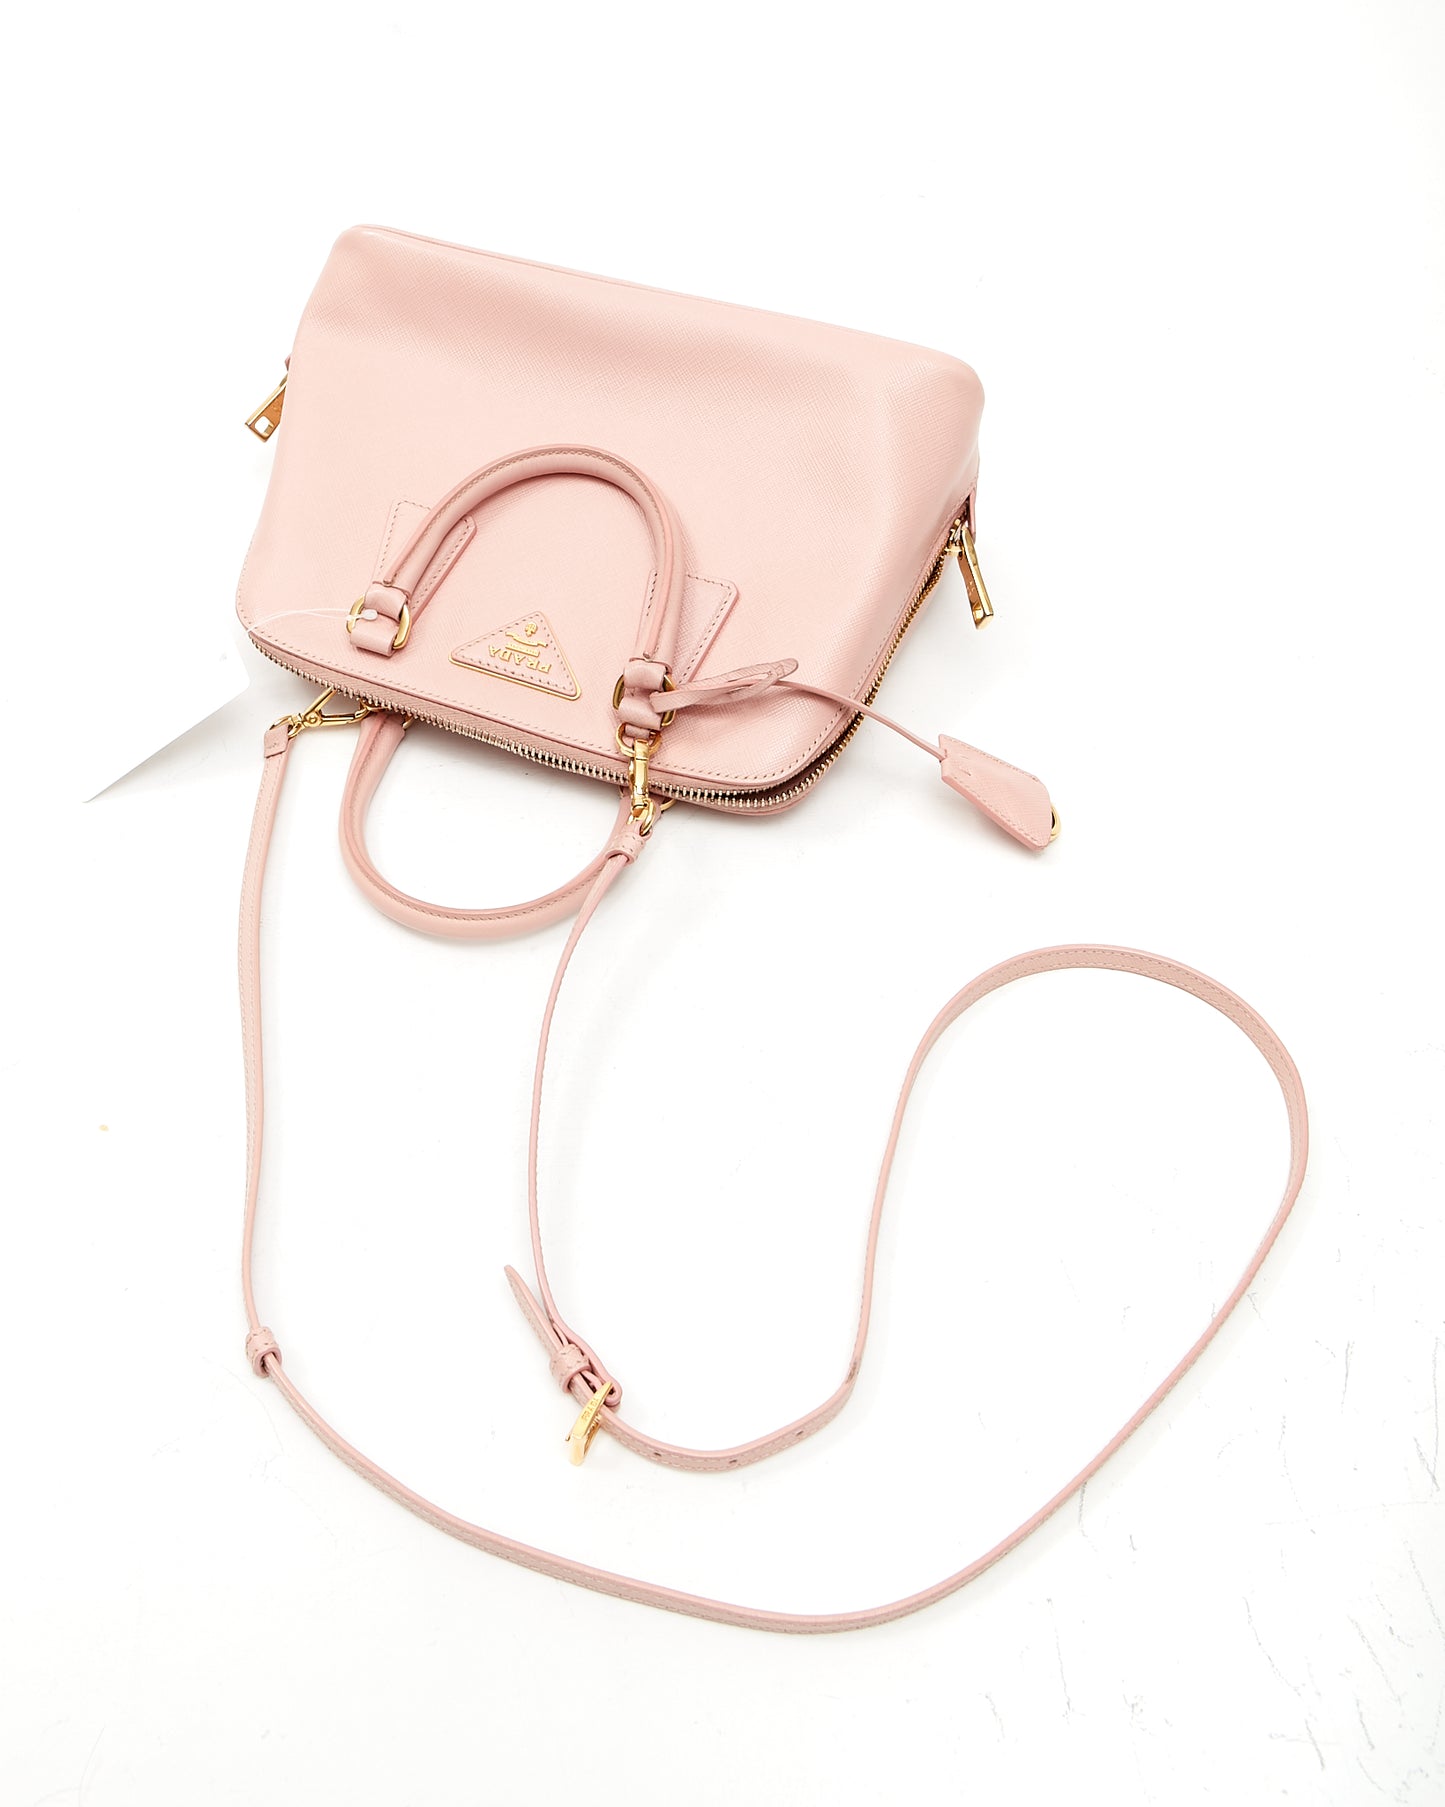 Prada Pink Saffiano Lux Leather Small Promenade Bag